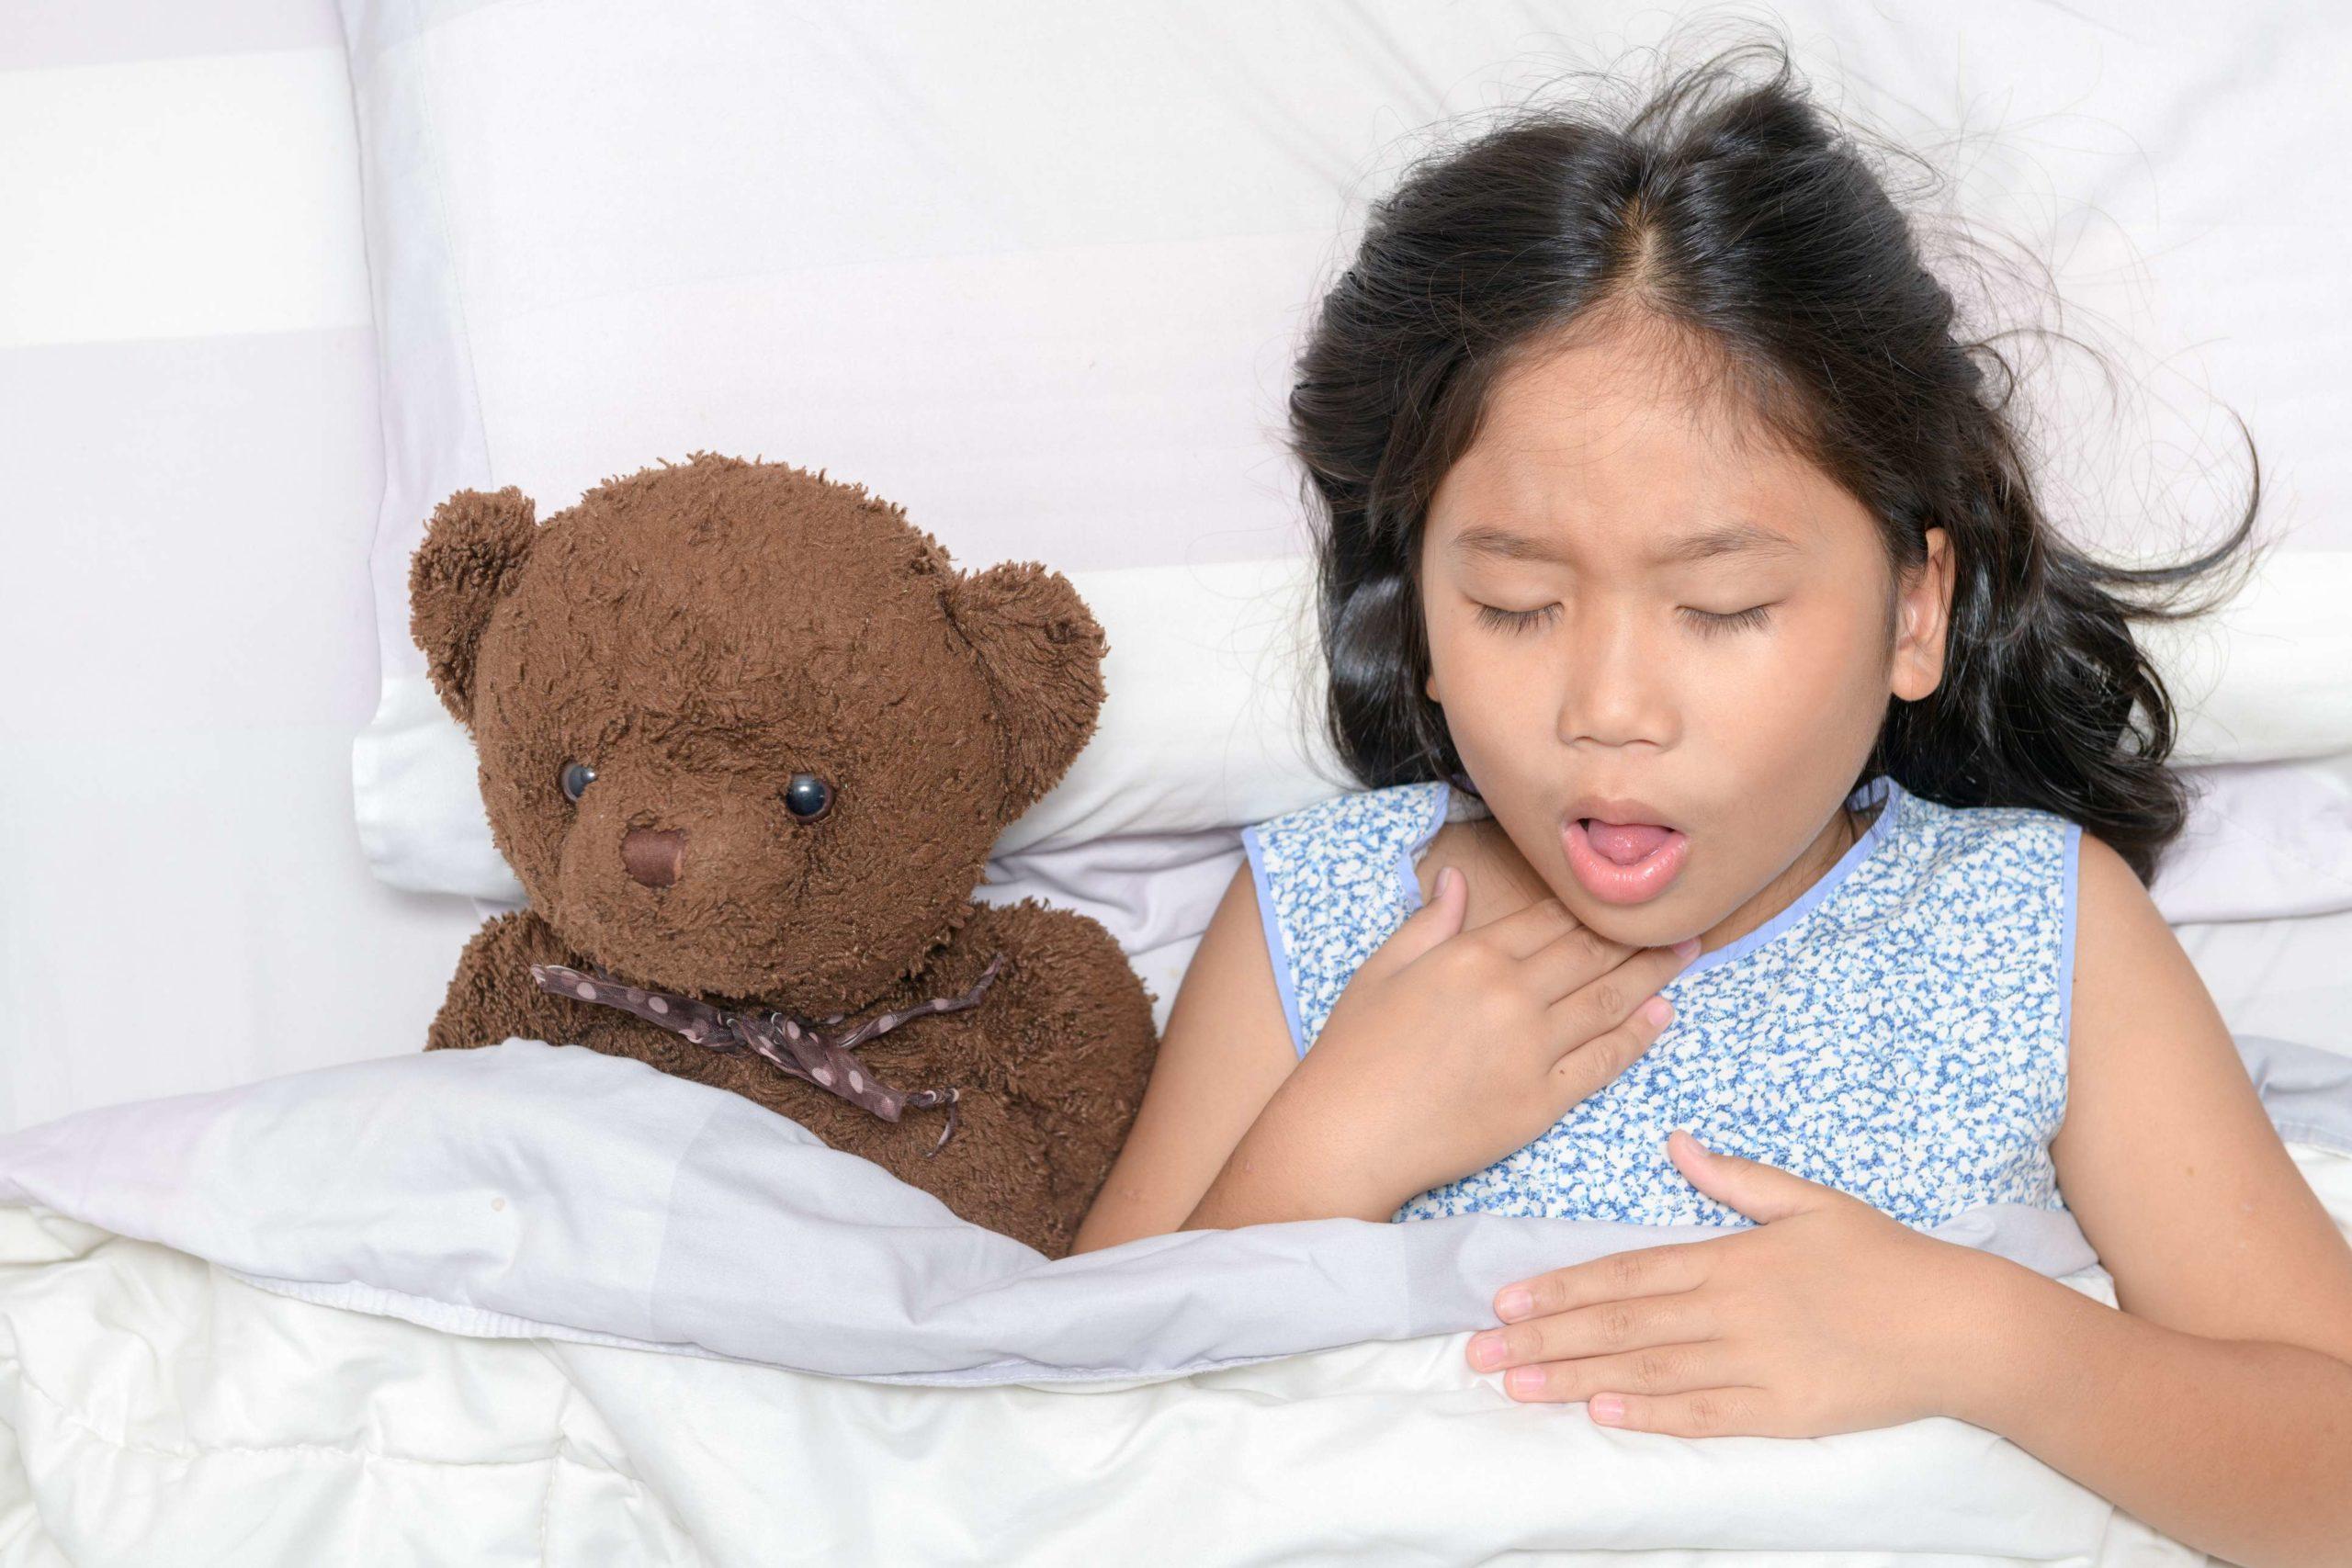 Kleines Mädchen hustet und Halsschmerzen, die auf Bett mit Spielzeugbär liegen, Gesundheitskonzept